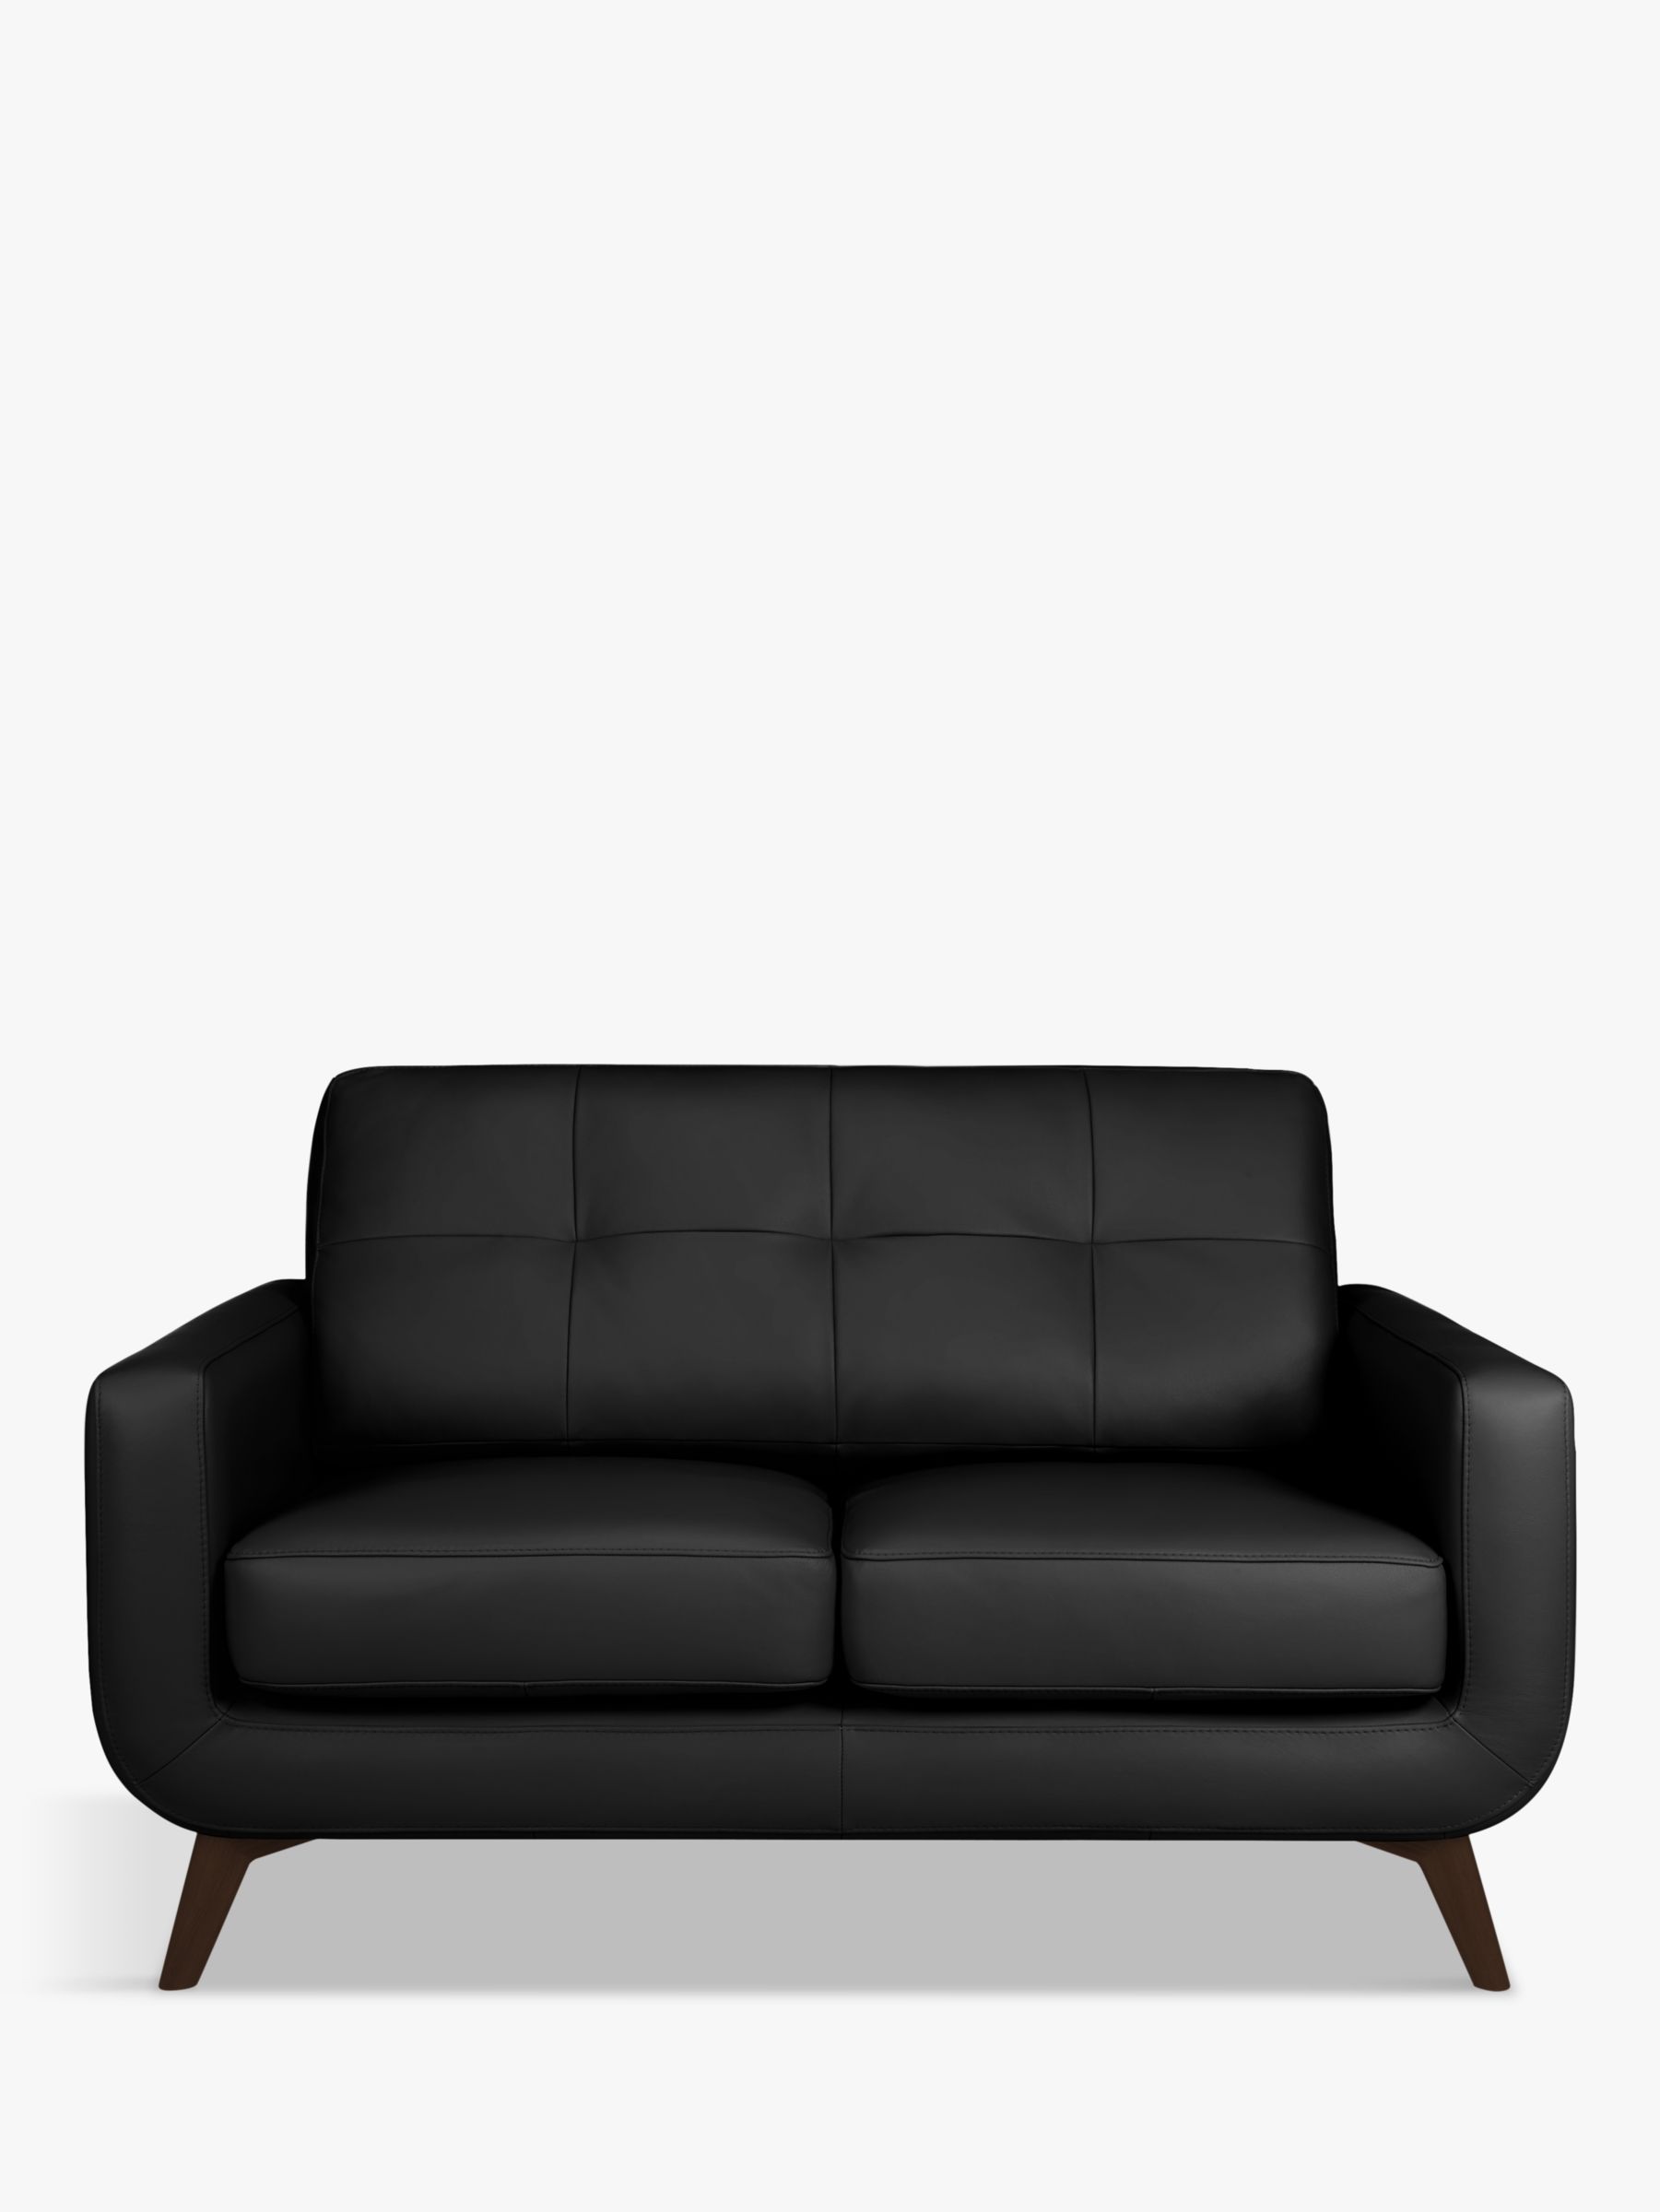 Barbican Range, John Lewis Barbican Small 2 Seater Leather Sofa, Dark Leg, Contempo Black